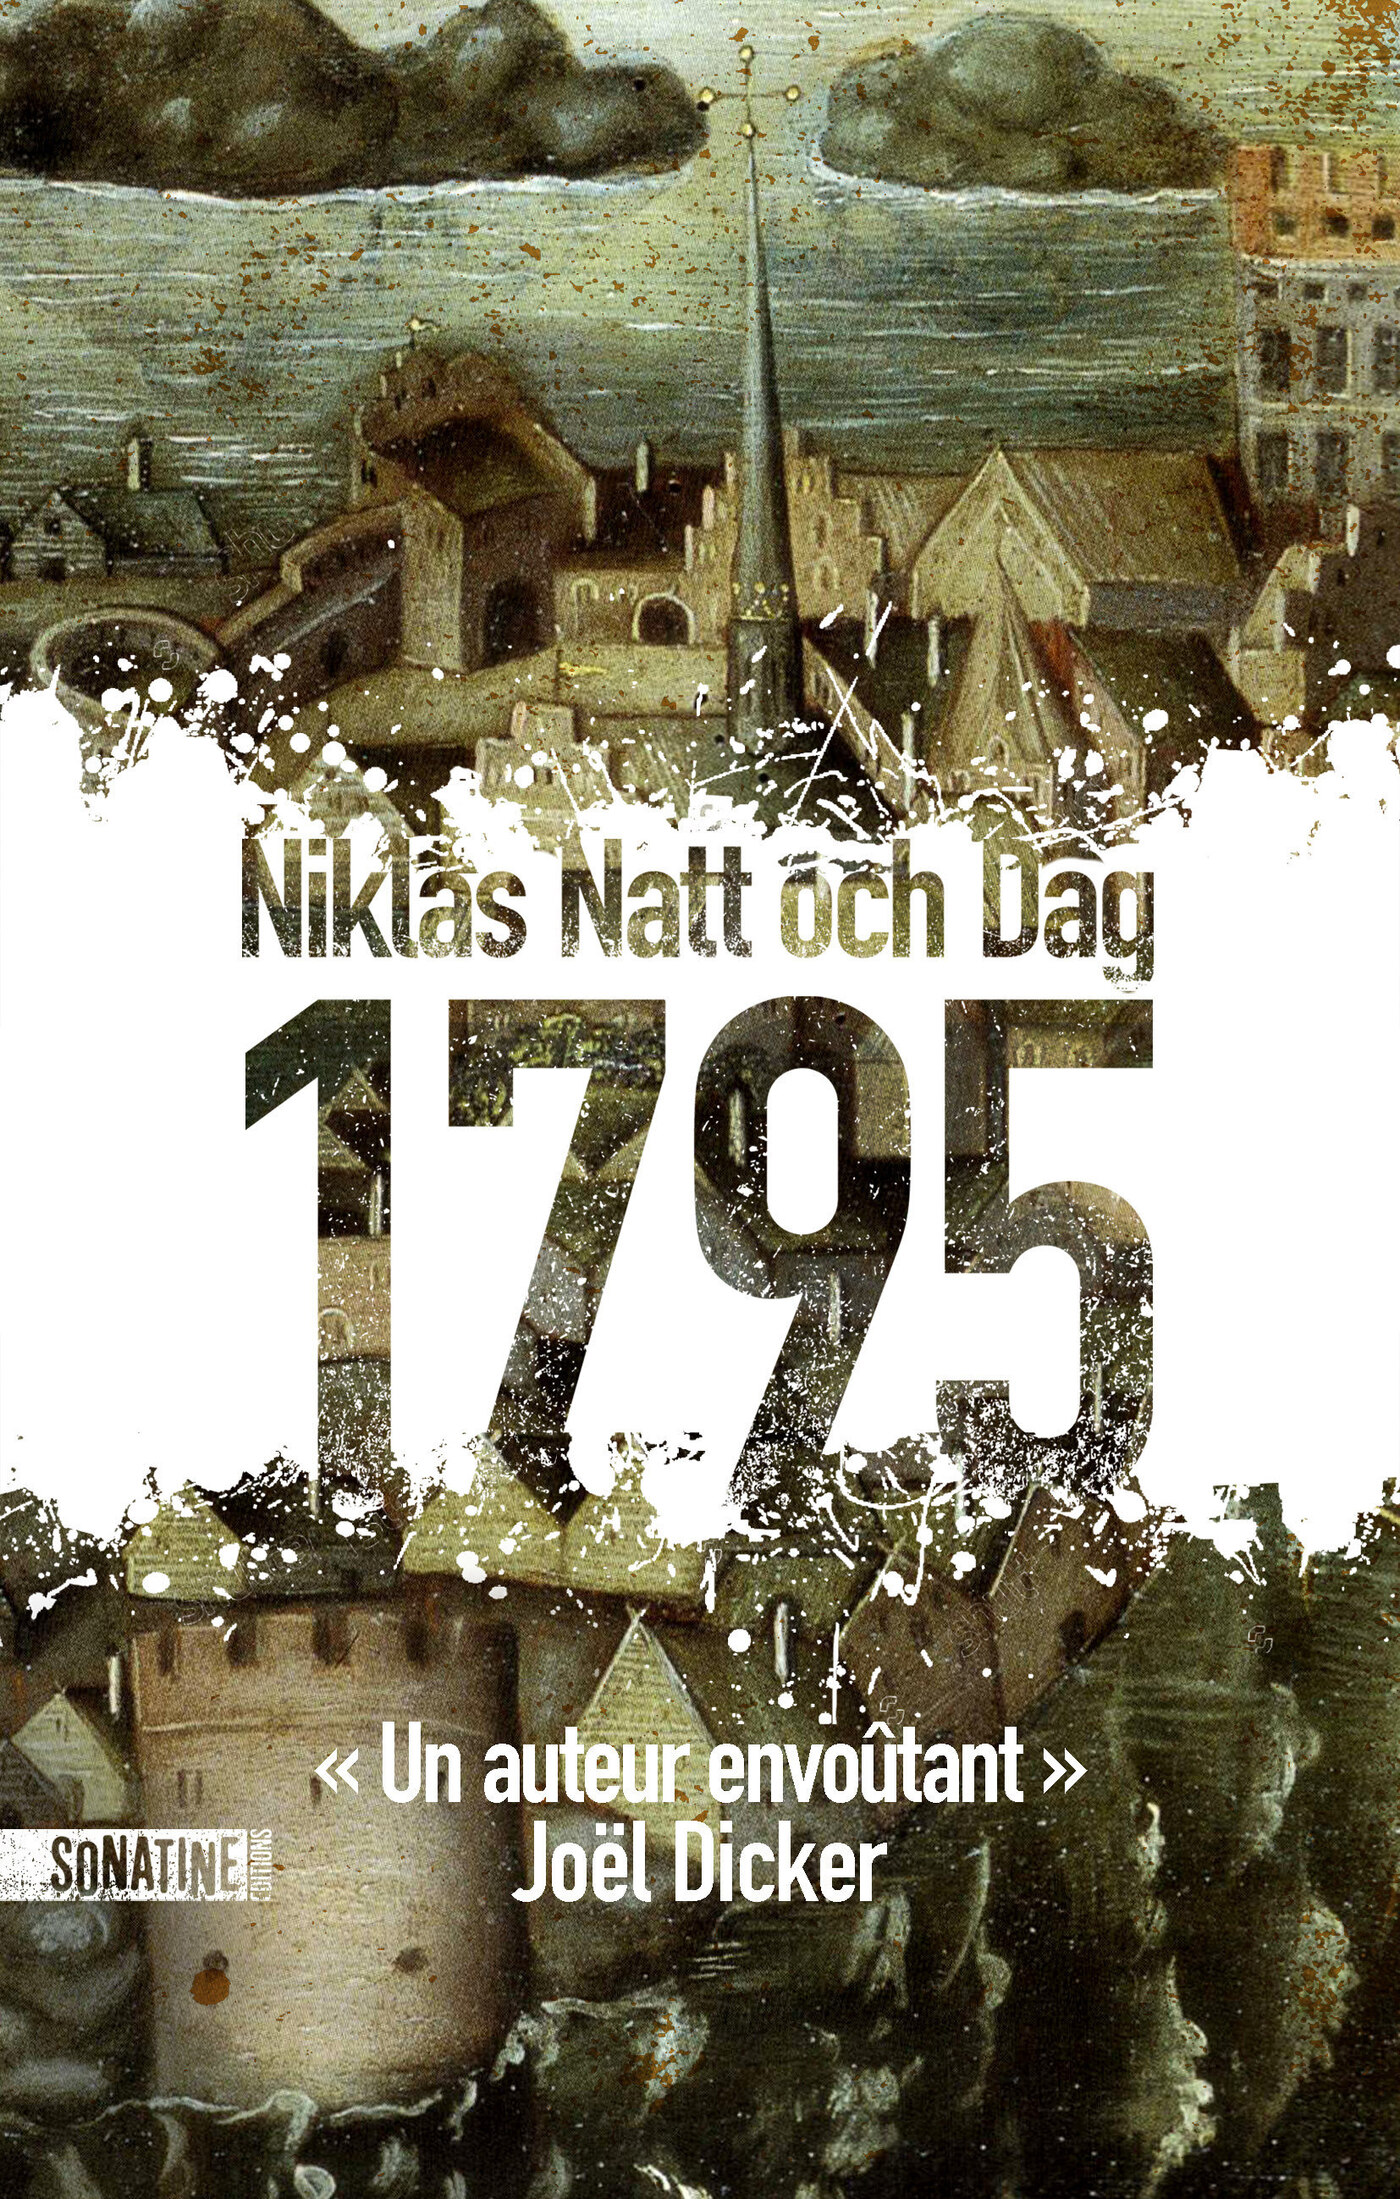 Afficher "1795"